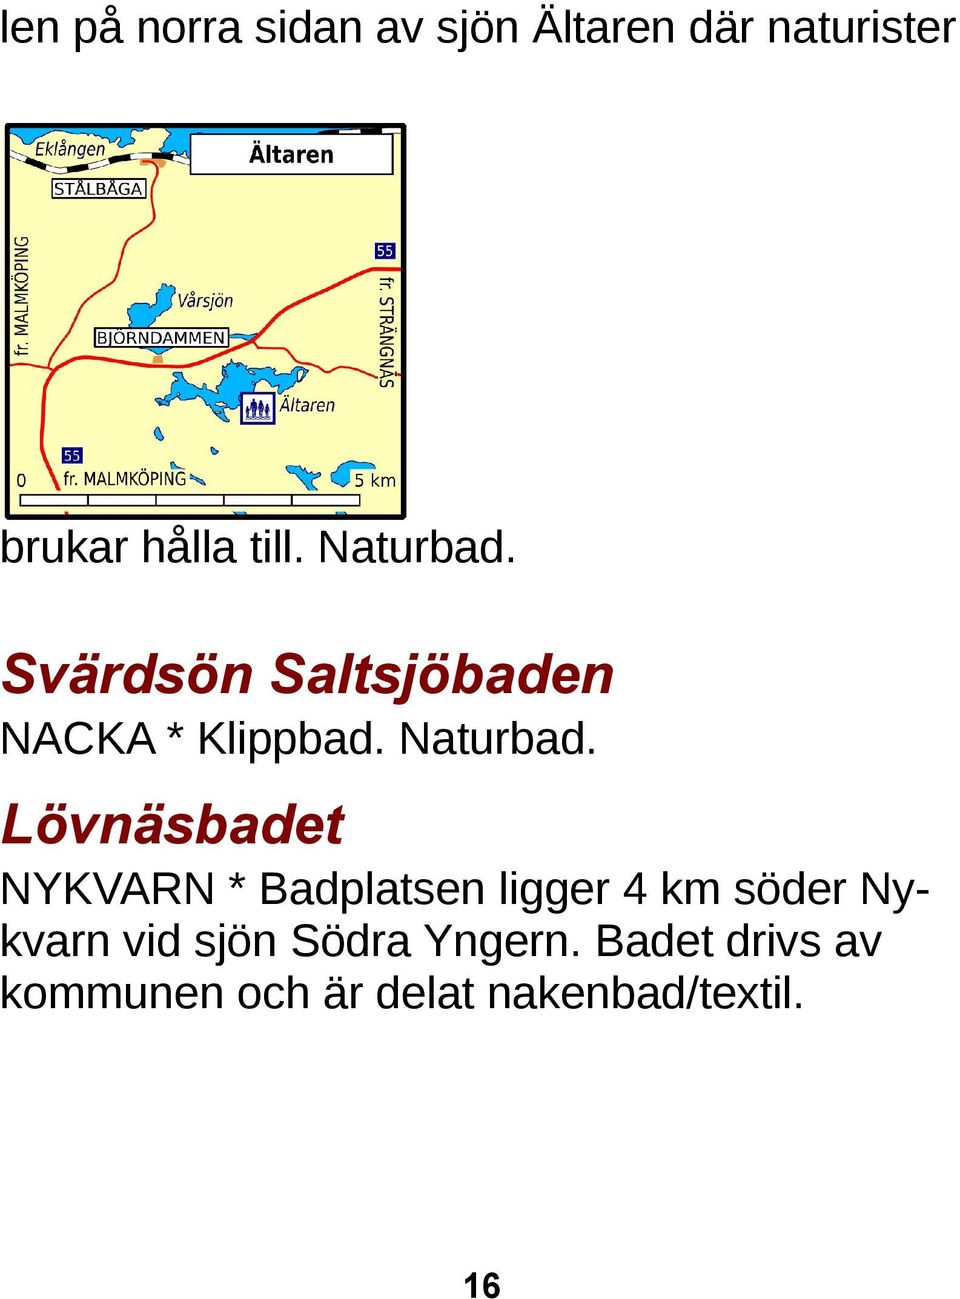 Svärdsön Saltsjöbaden NACKA * Klippbad. Naturbad.